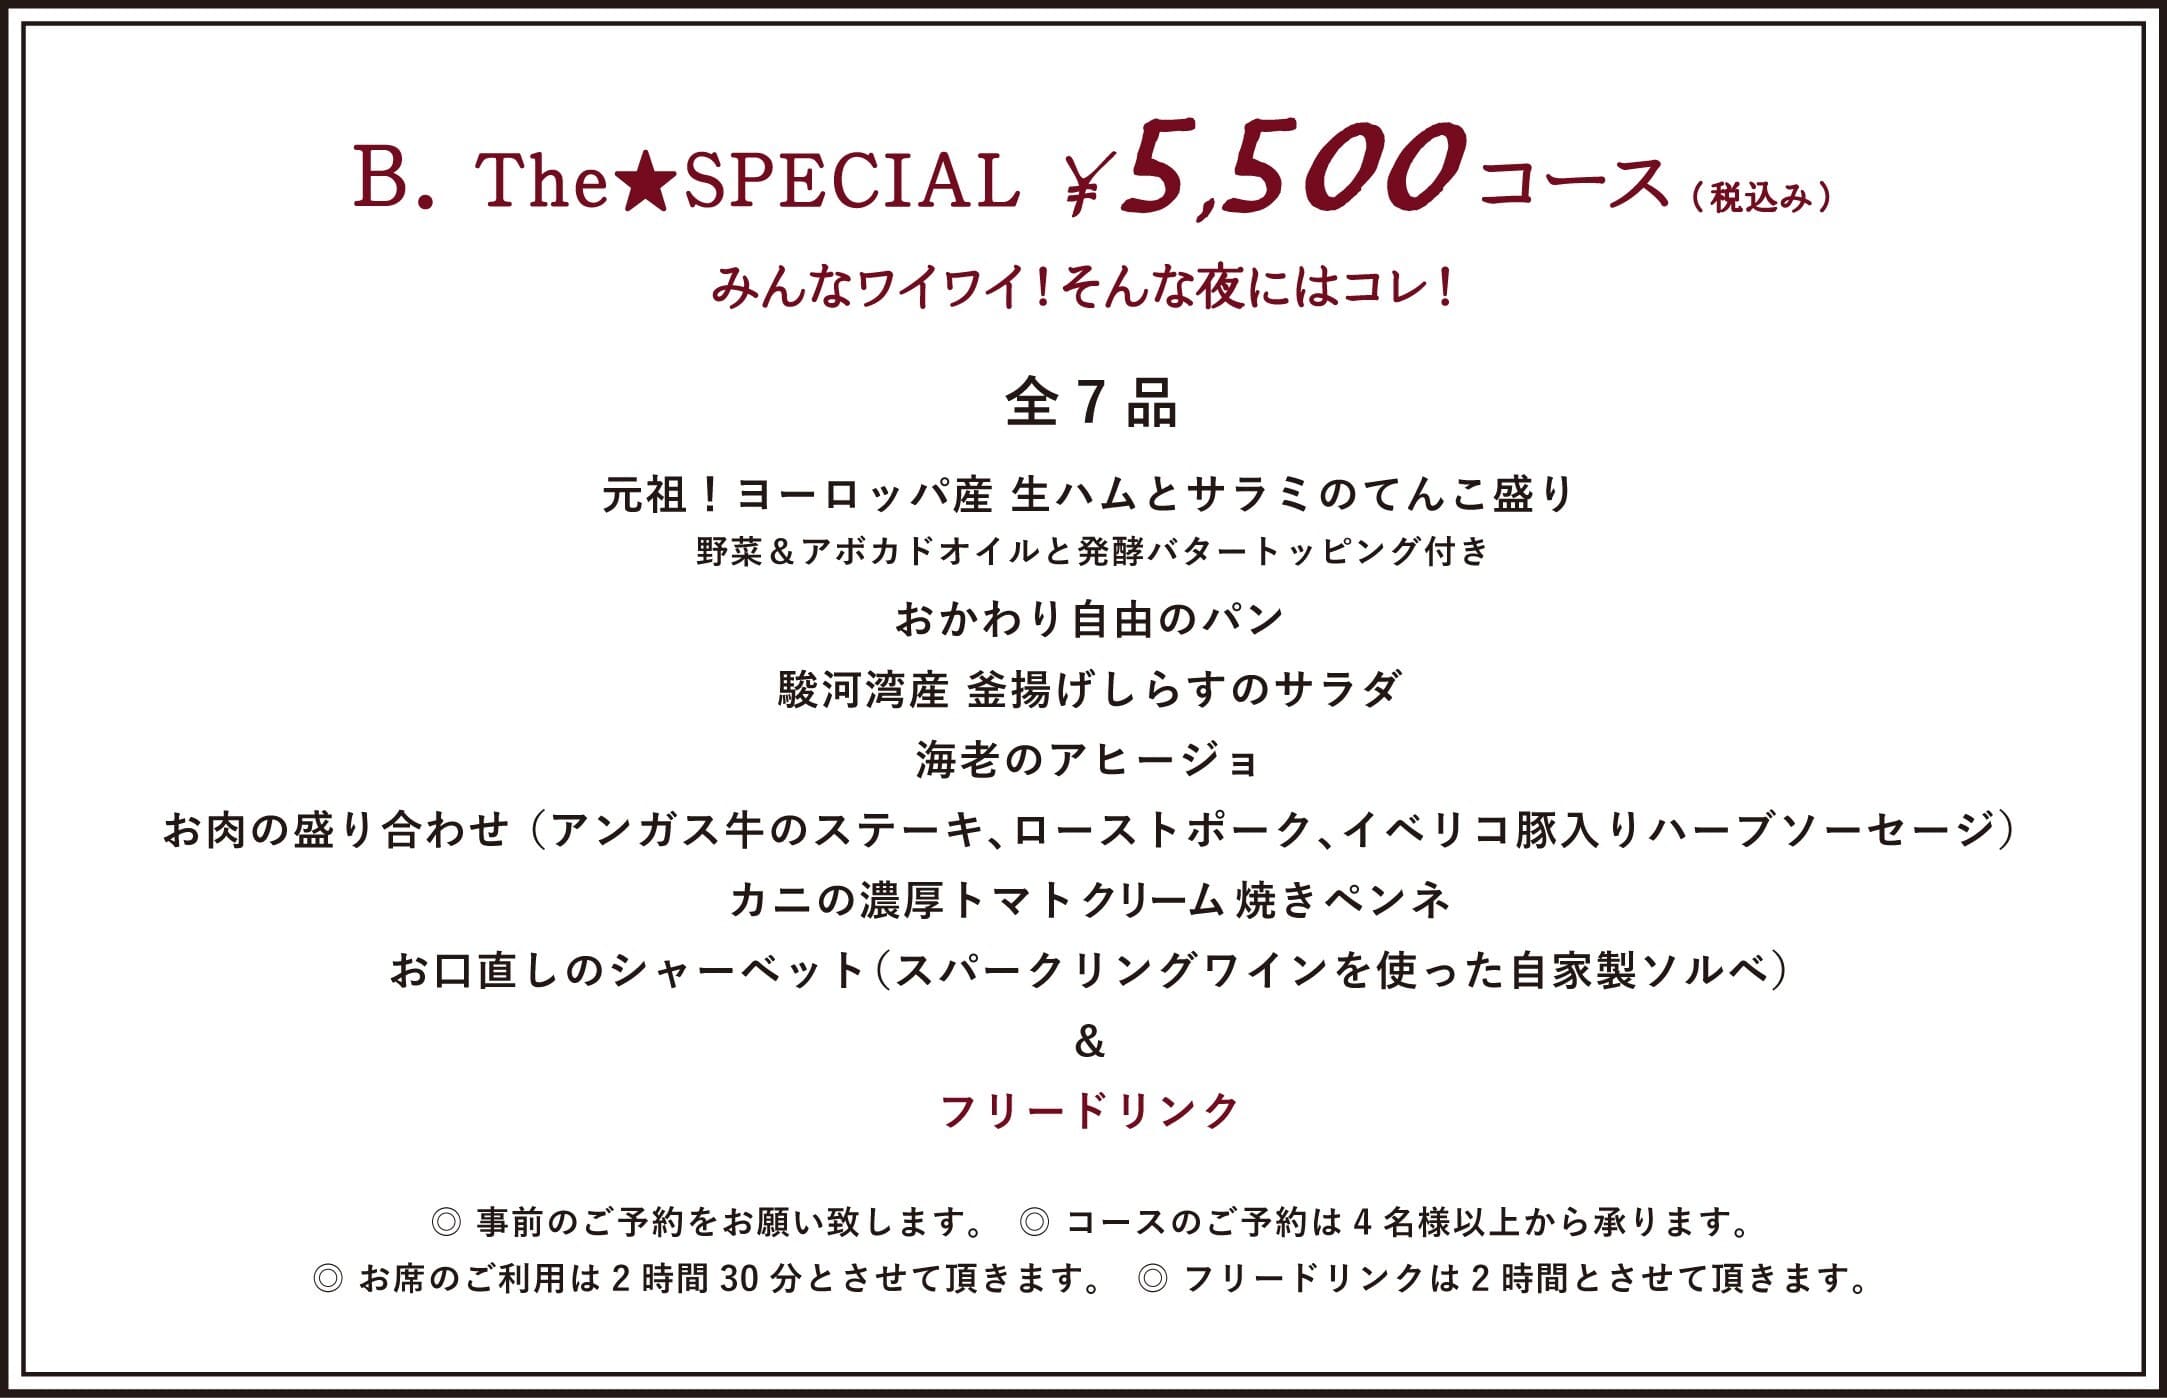 ¥5,500 COURSE